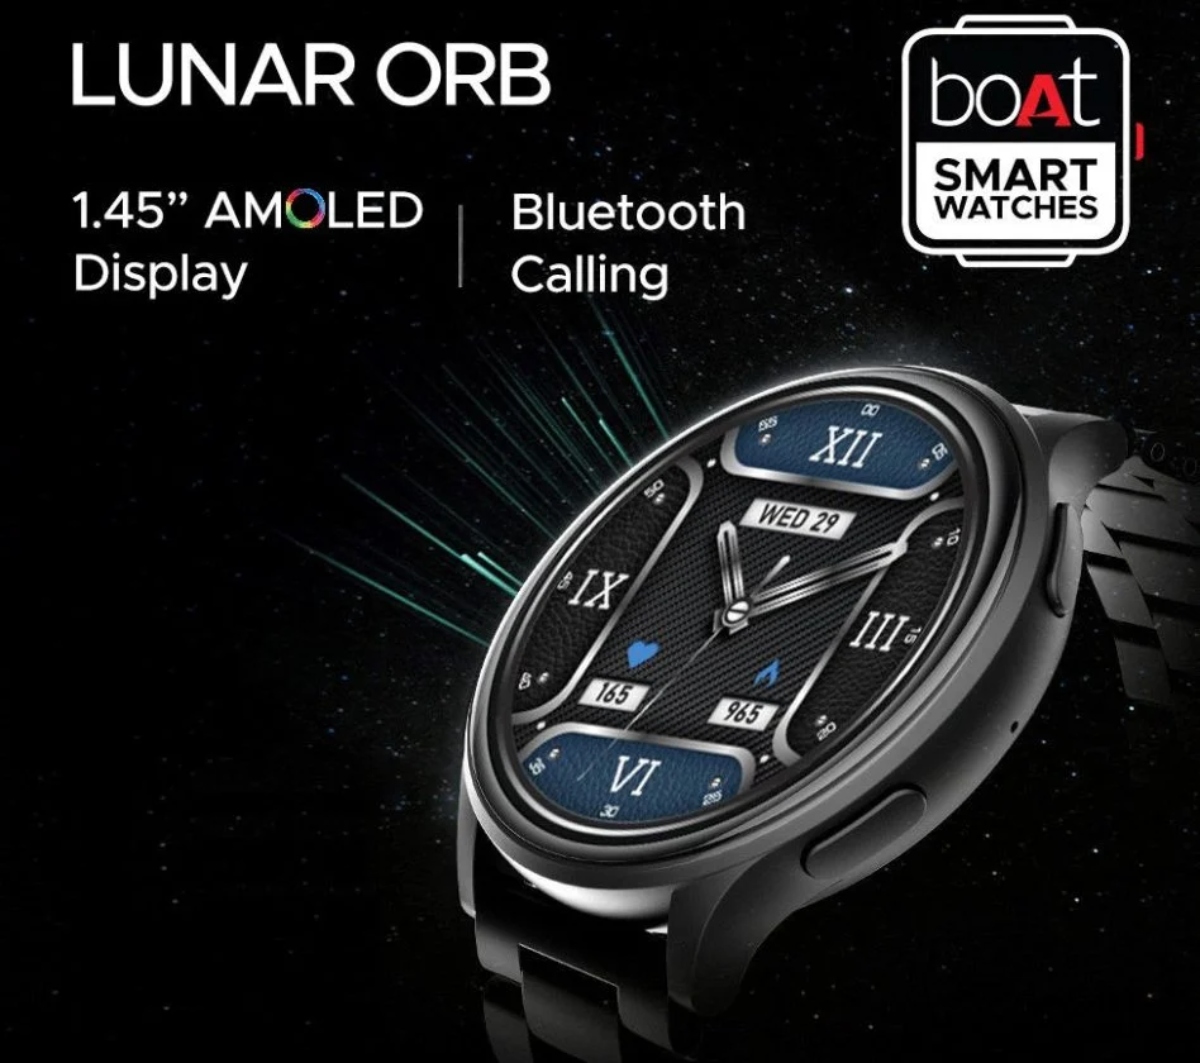 إطلاق ساعة boAt Lunar ORB الذكية بشاشة AMOLED مقاس 1.45 بوصة وتصنيف IP67 والمزيد